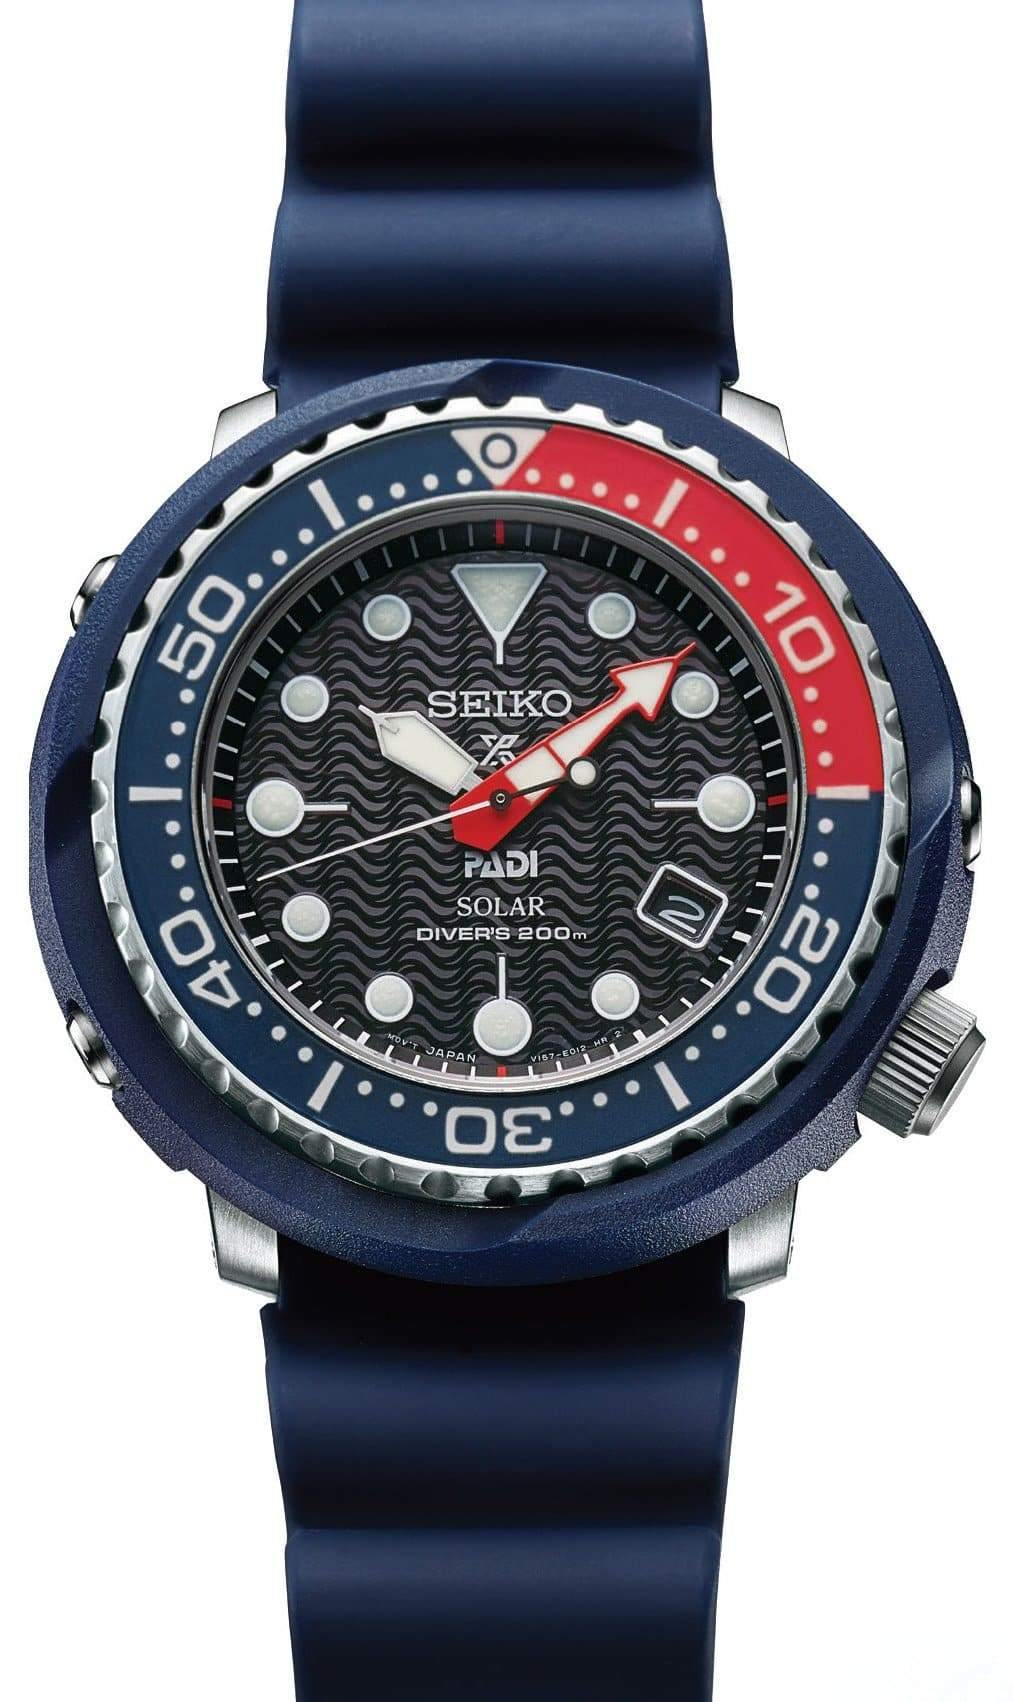 Seiko Special Edition PADI Solar Tuna Prospex Diver's Men's Rubber Strap Watch SNE499P1 - Prestige